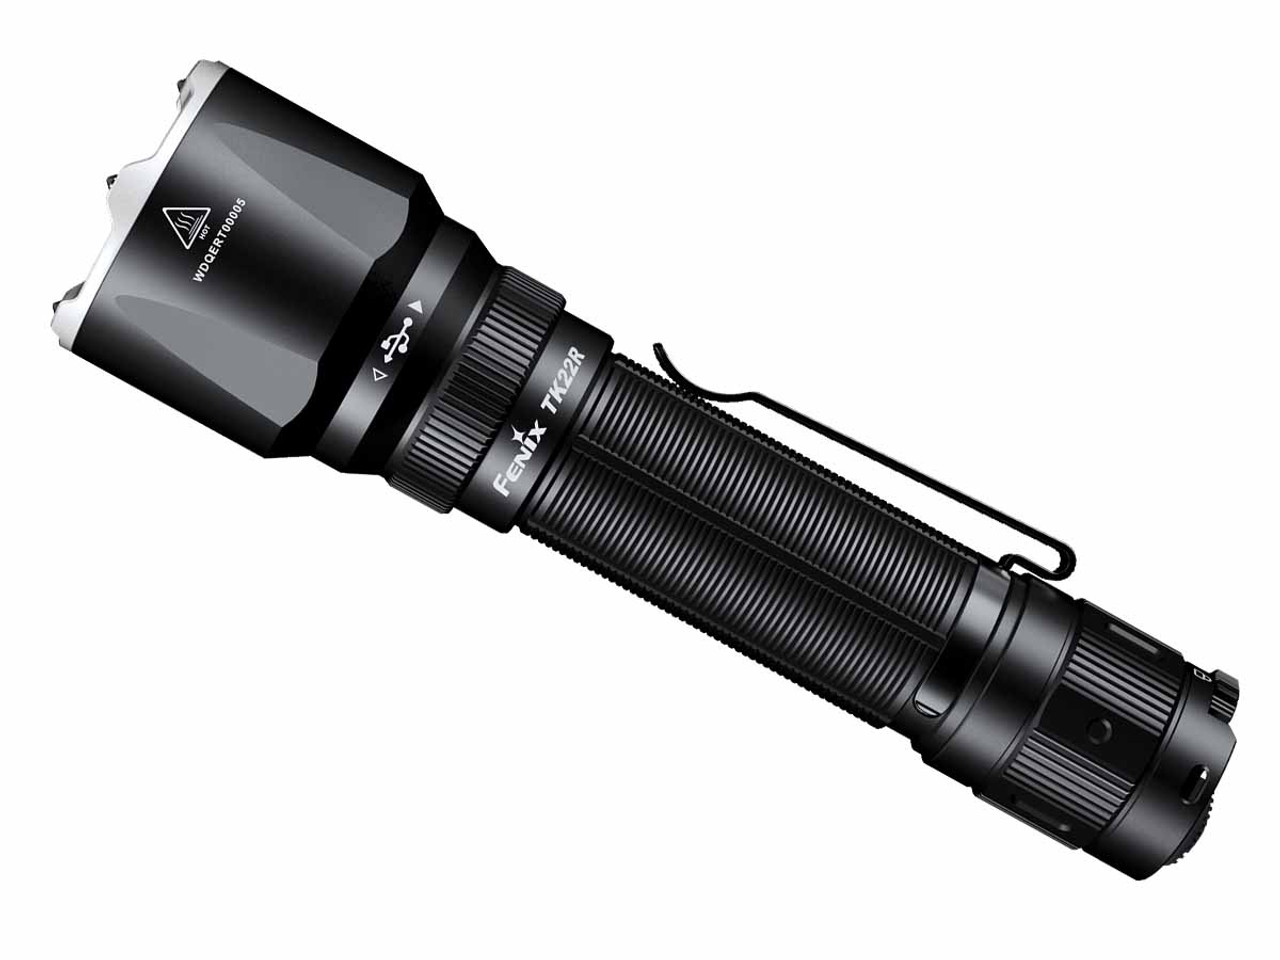 TK22R - Fenix 3200 Lumen Tactical & Duty Rechargeable Flashlight